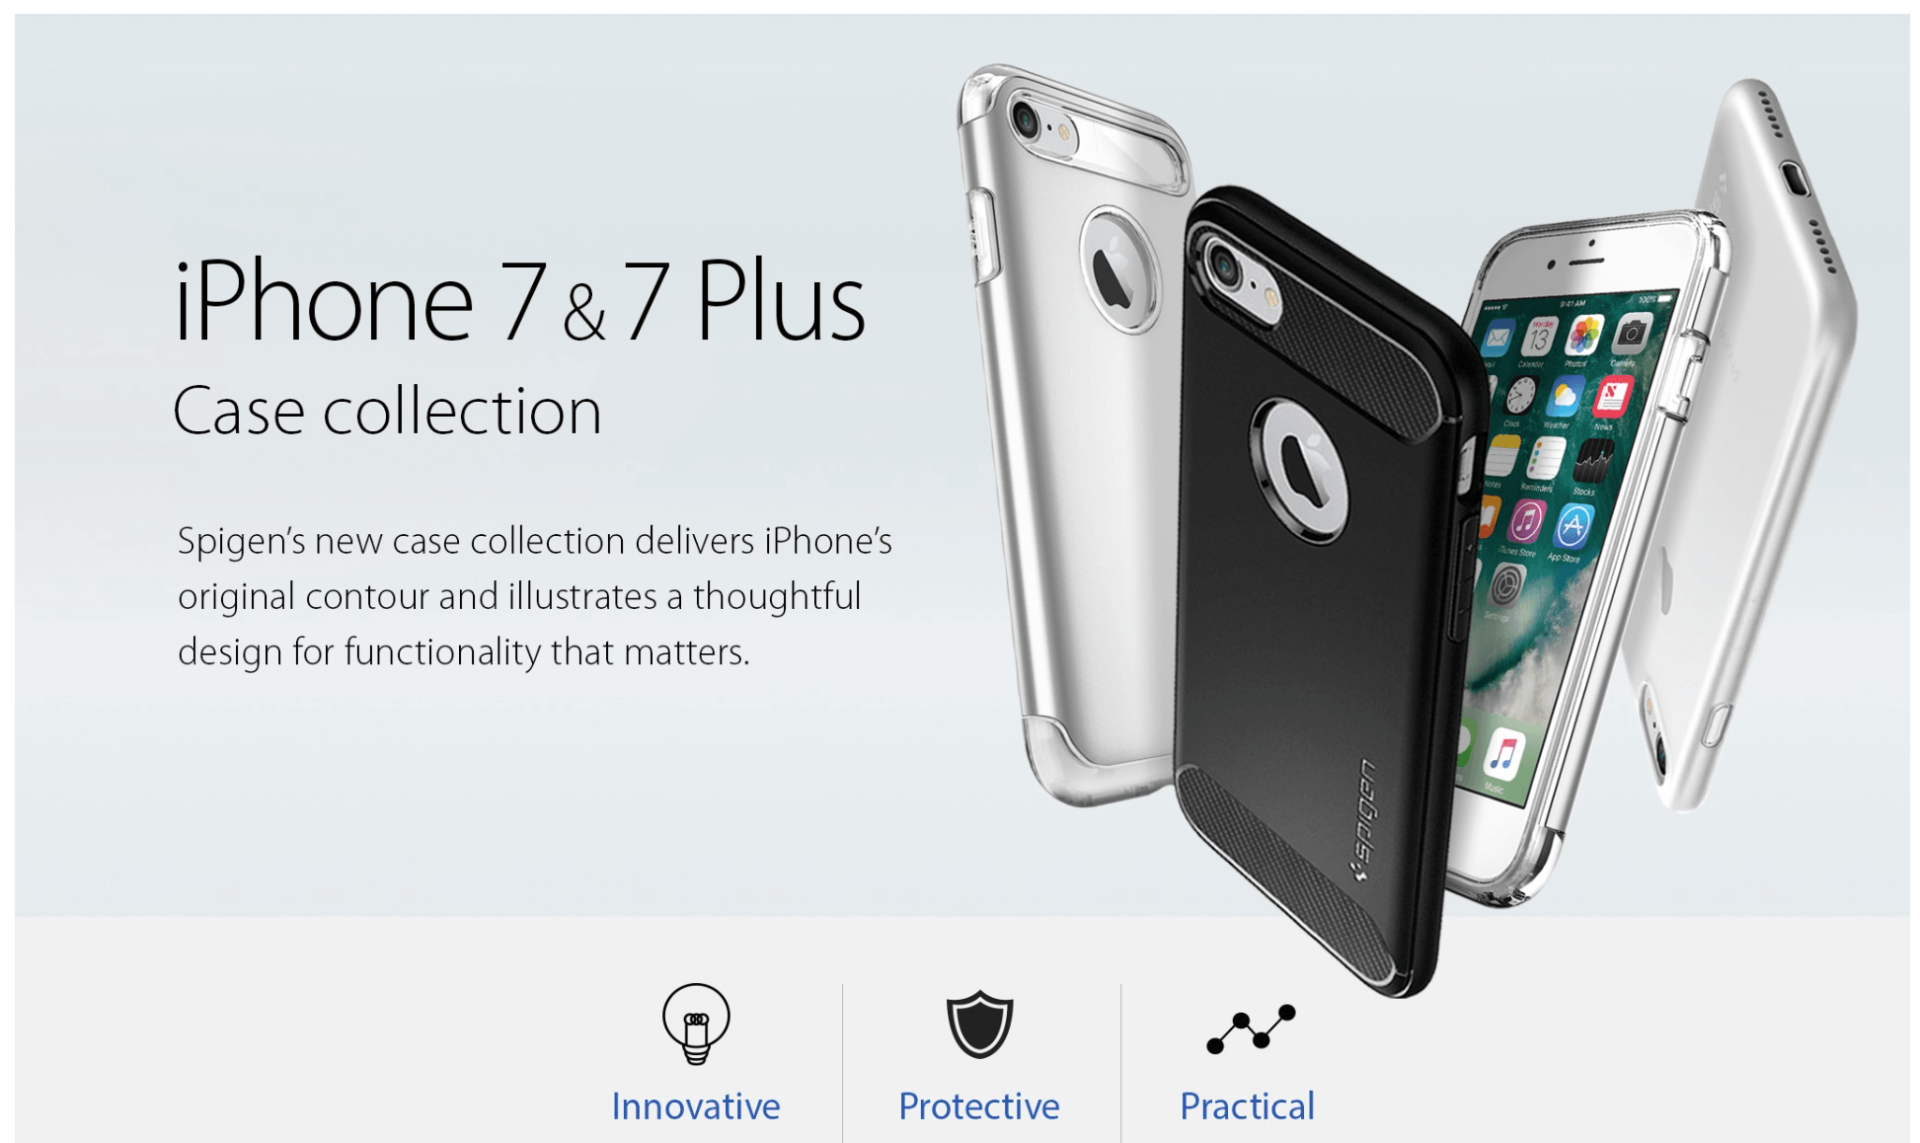 ออกตัวแรง! Spigen เผยเคสสำหรับ iPhone 7 และ iPhone 7 Plus พร้อมรายละเอียดตัวเครื่อง!!